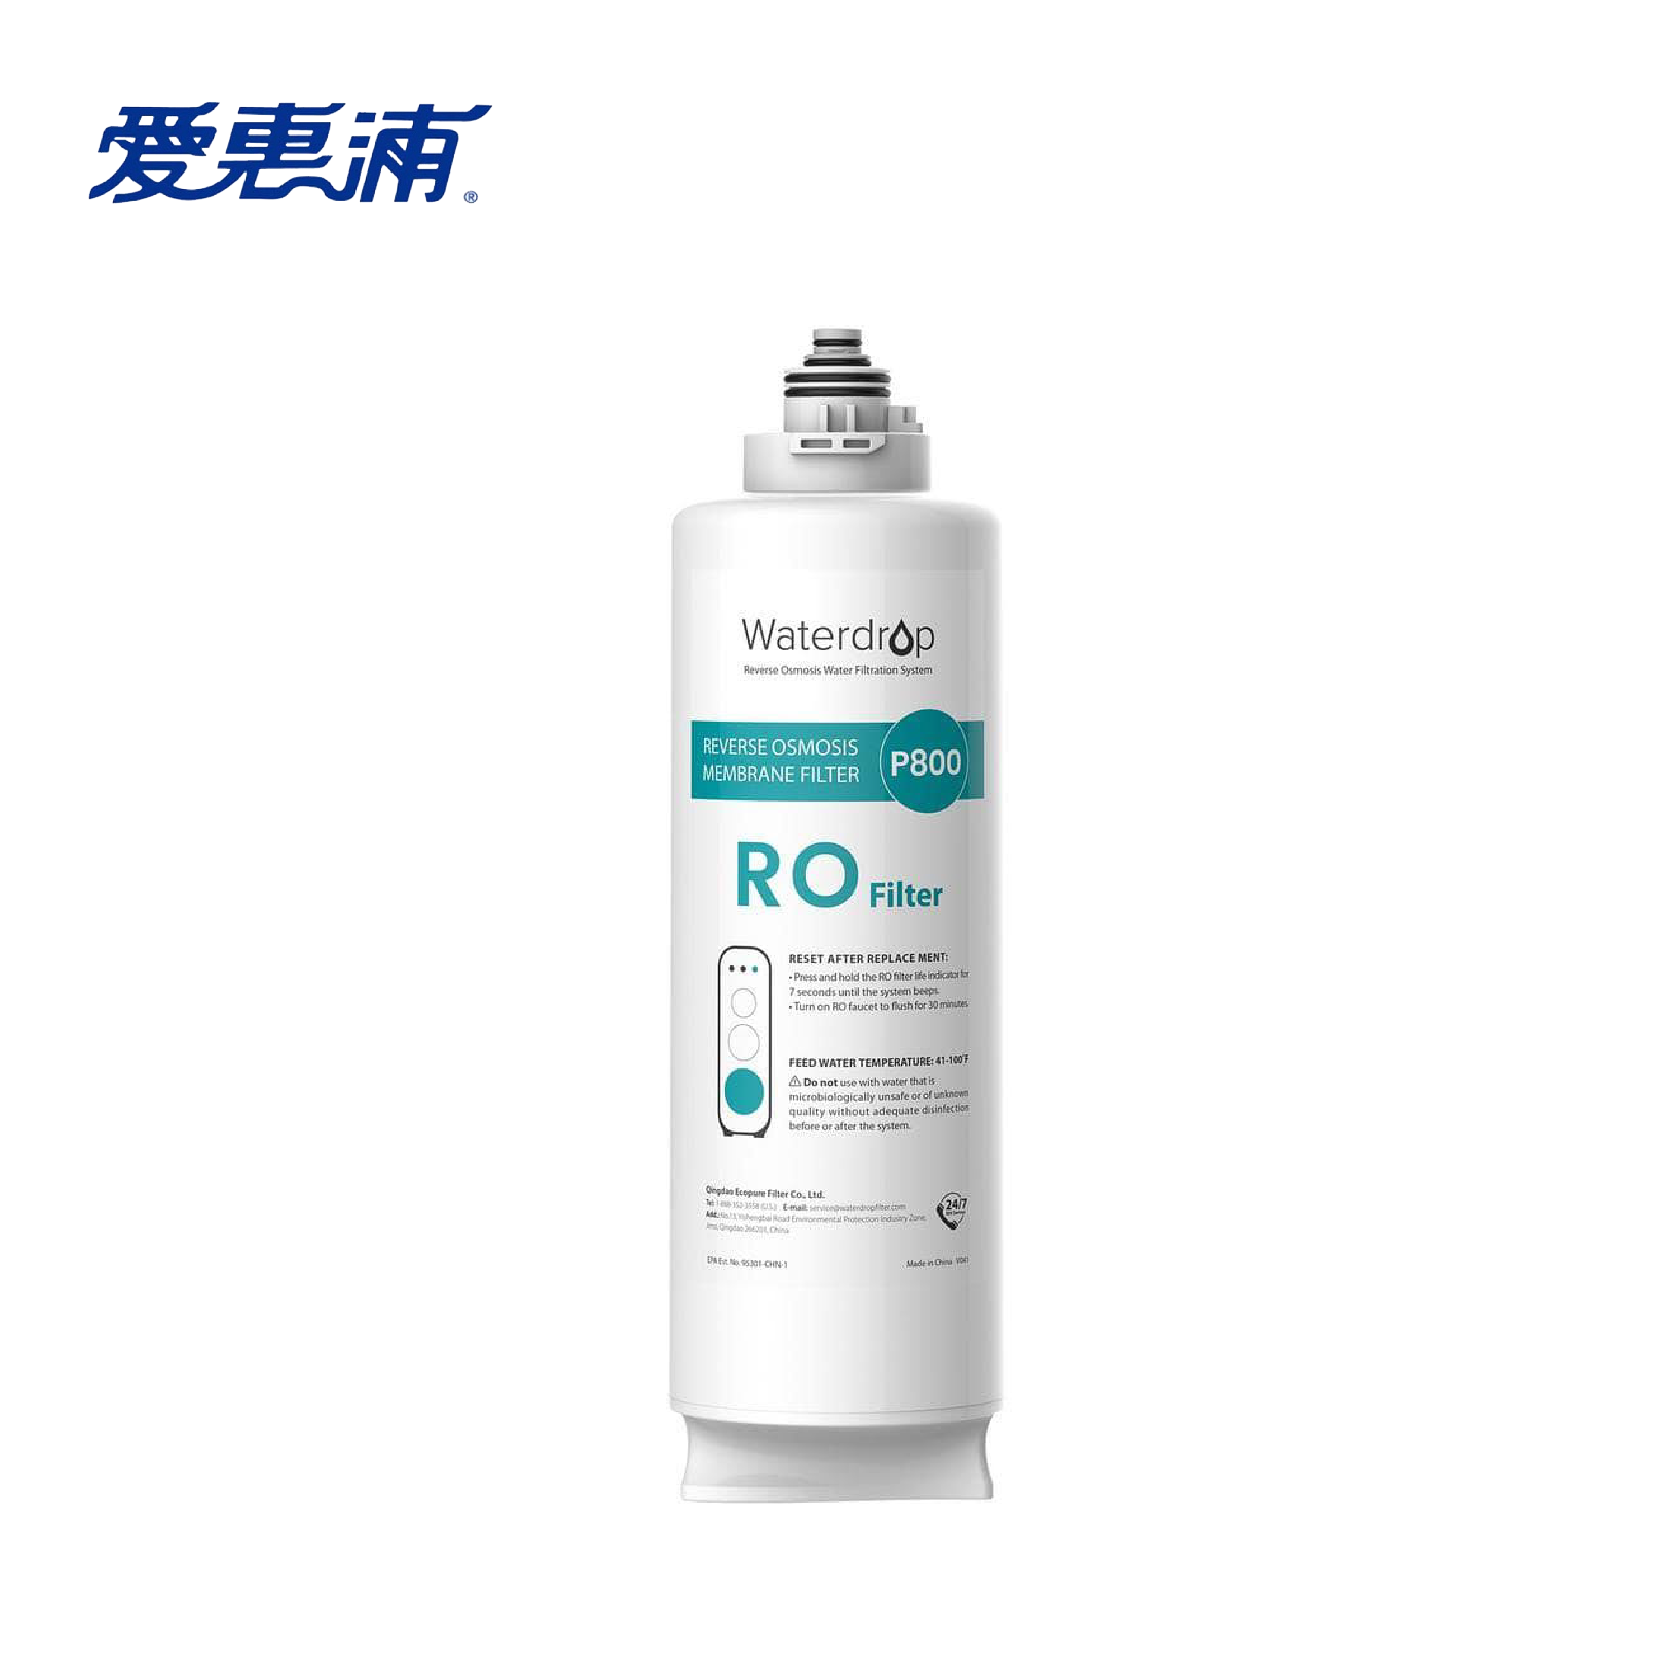  台灣愛惠浦Waterdrop WD-G2P6MRO RO濾芯(G3P800專用第三道)提升飲用水口感